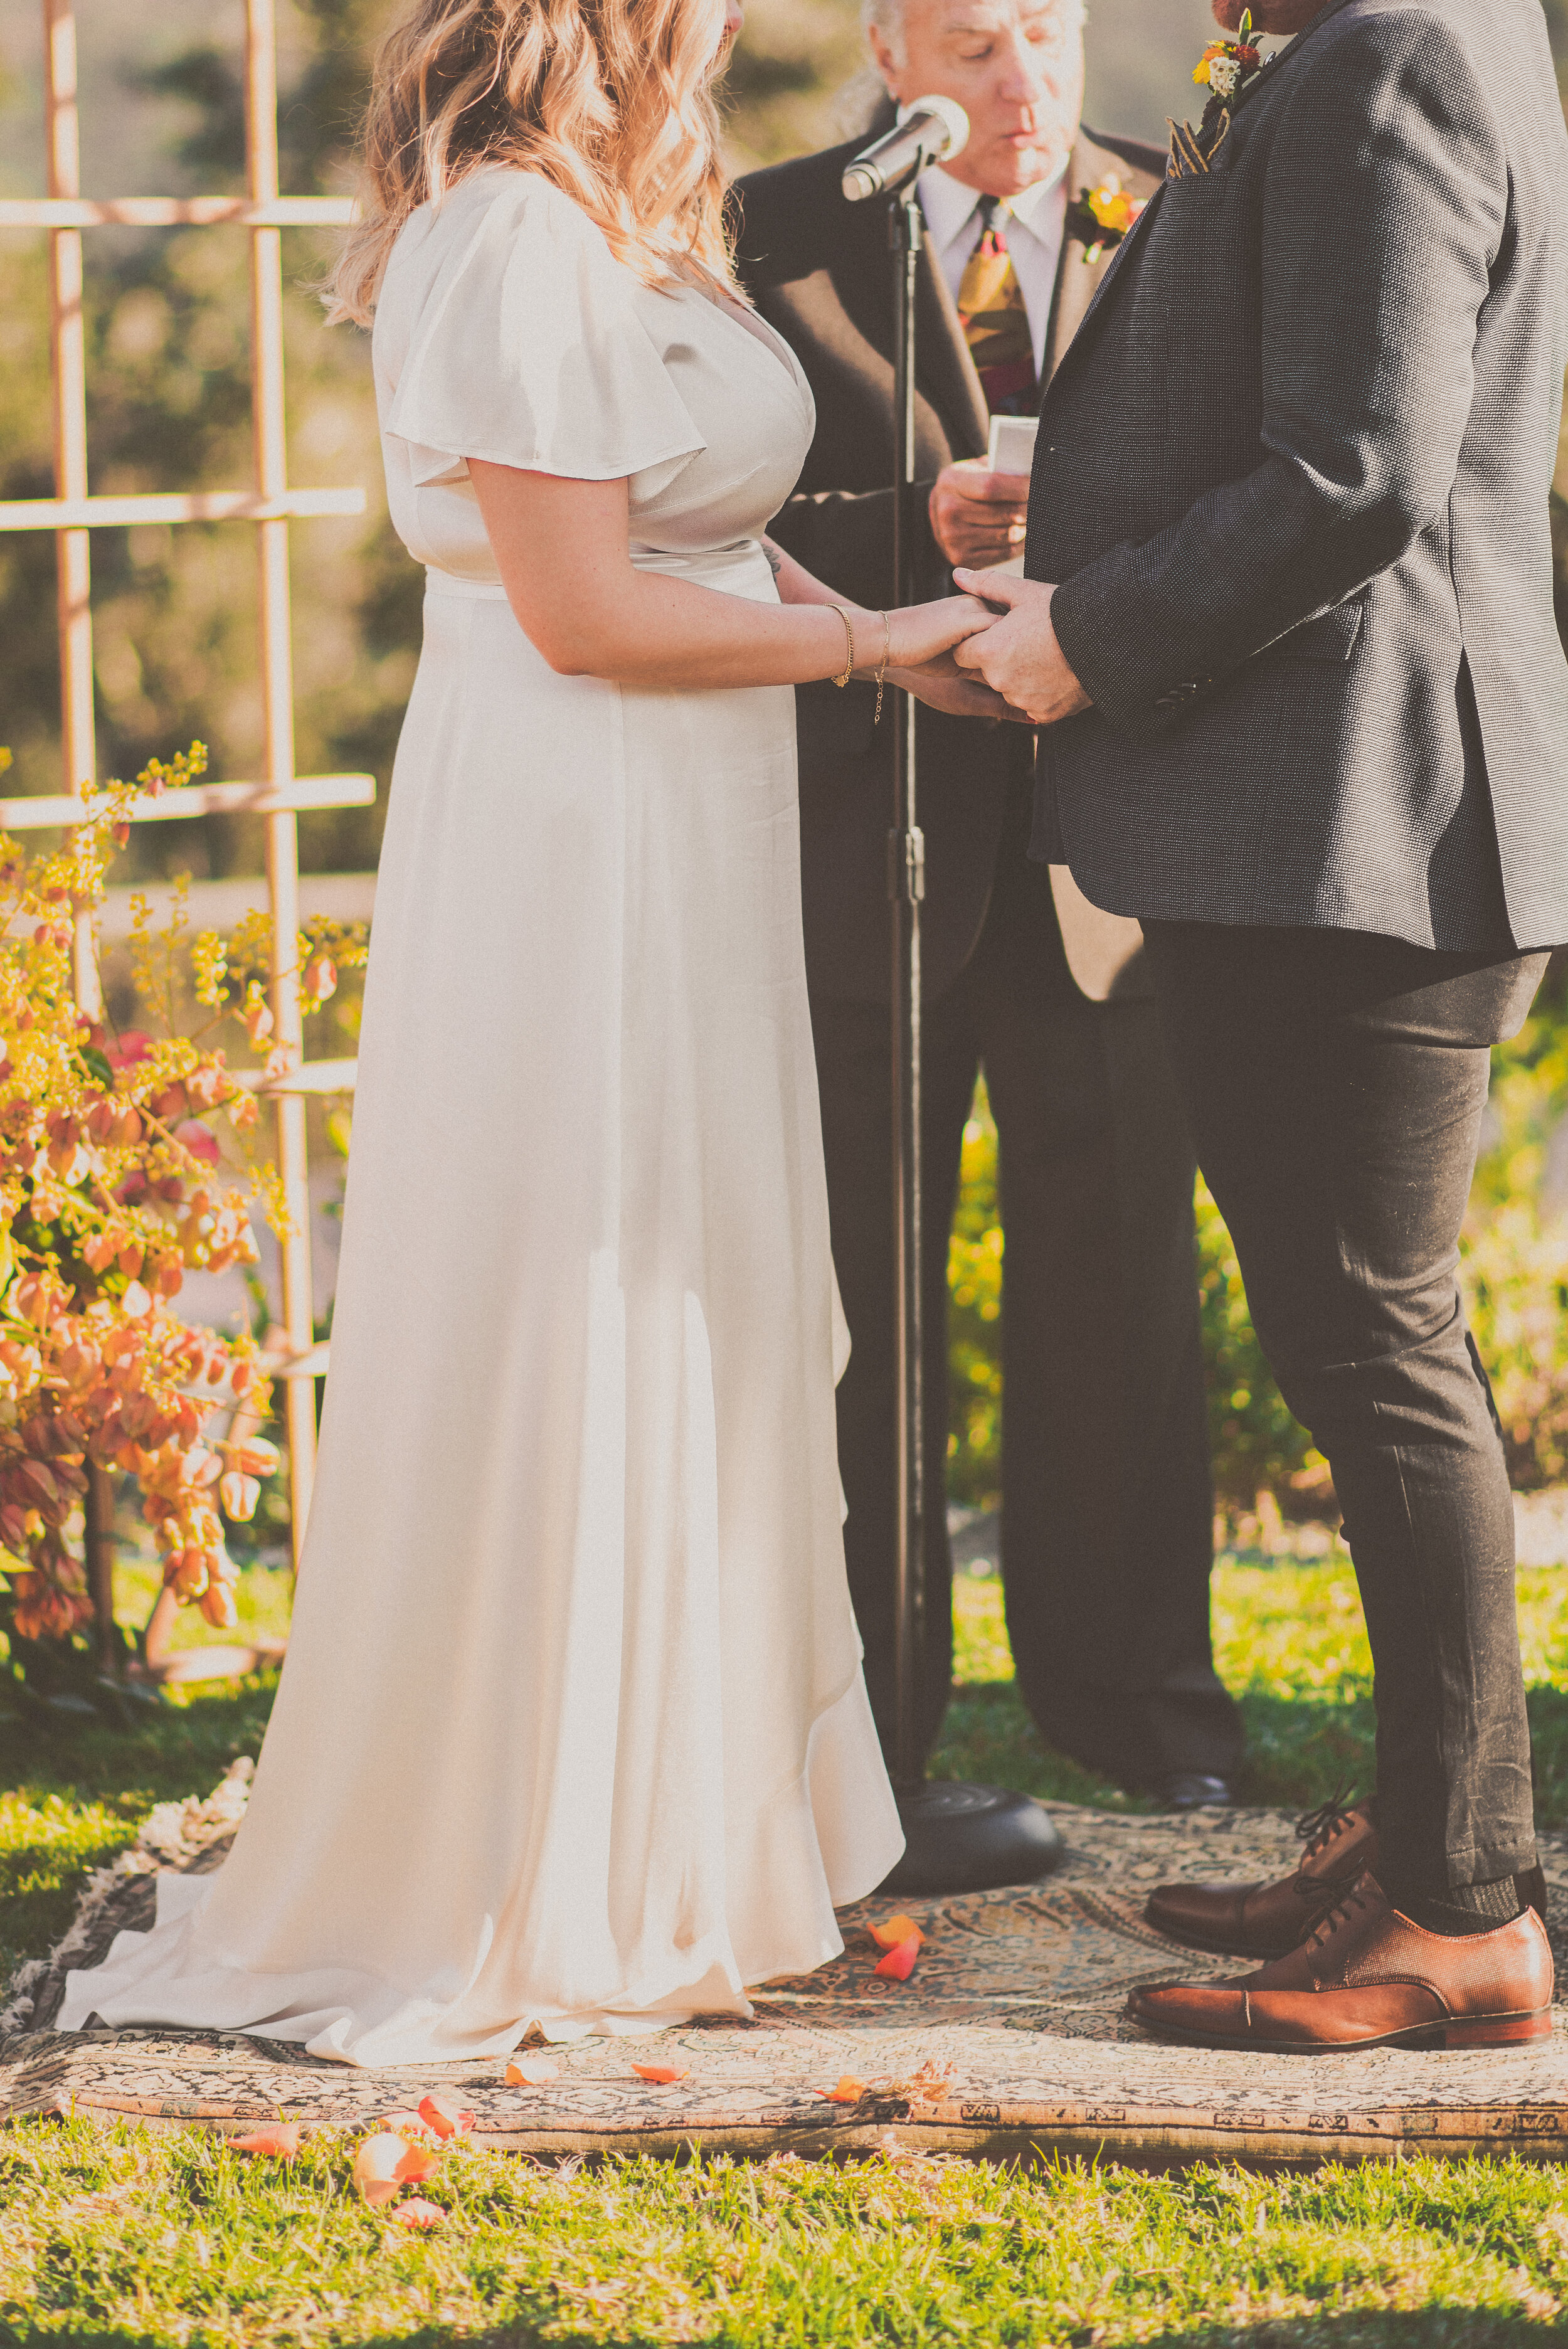 2019 Limpic Wedding - Ceremony-30.jpg